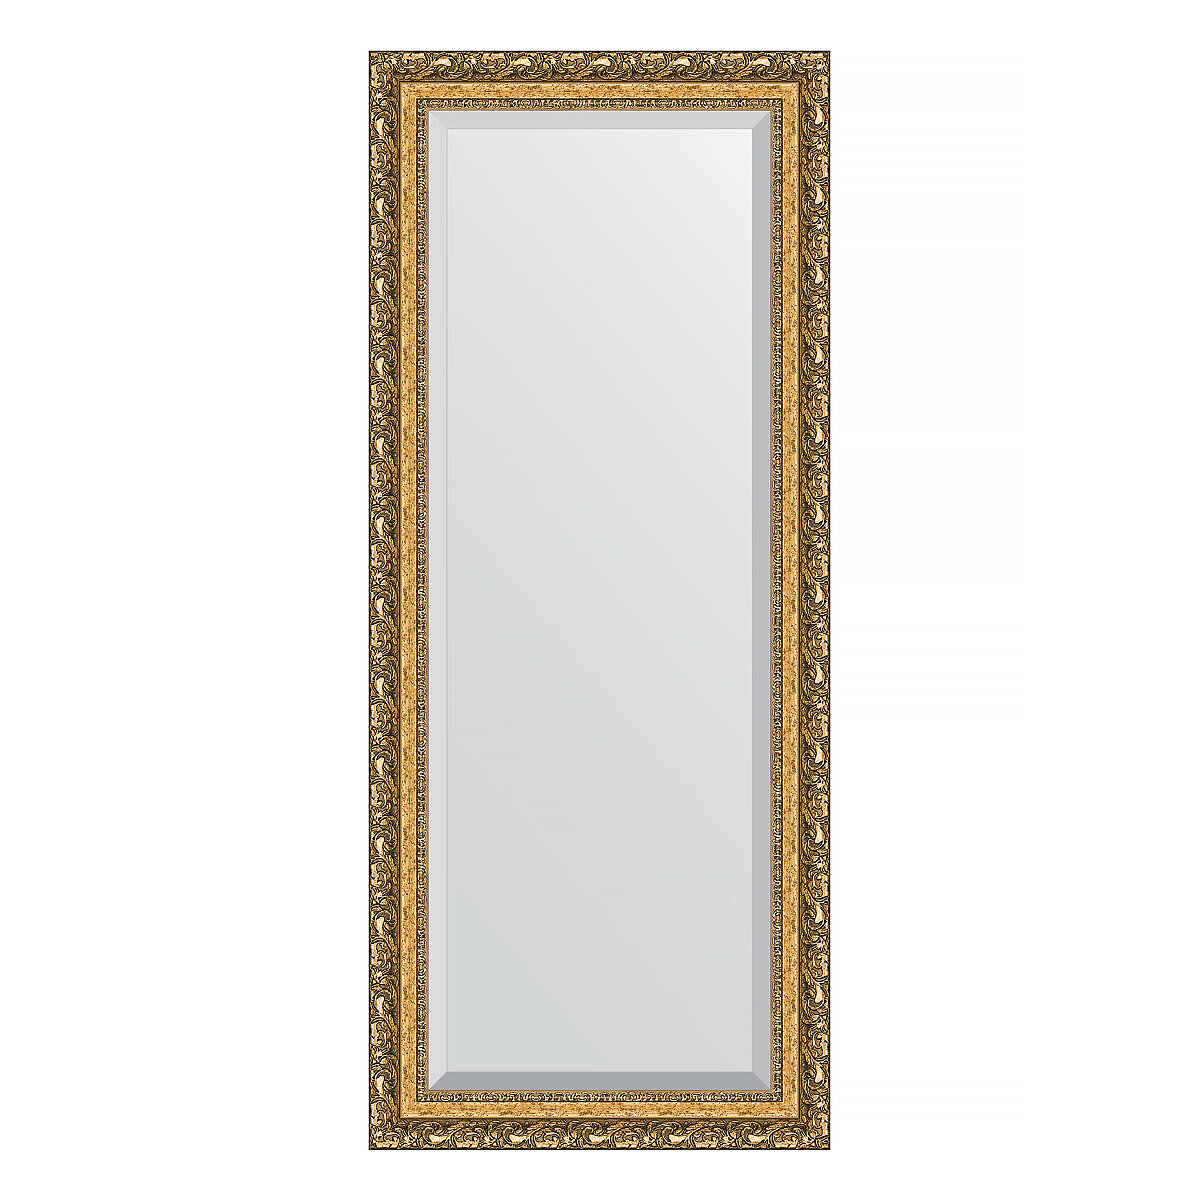 Зеркало настенное с фацетом EVOFORM в багетной раме виньетка бронзовая, 65х155 см, для гостиной, прихожей, спальни и ванной комнаты, BY 1290